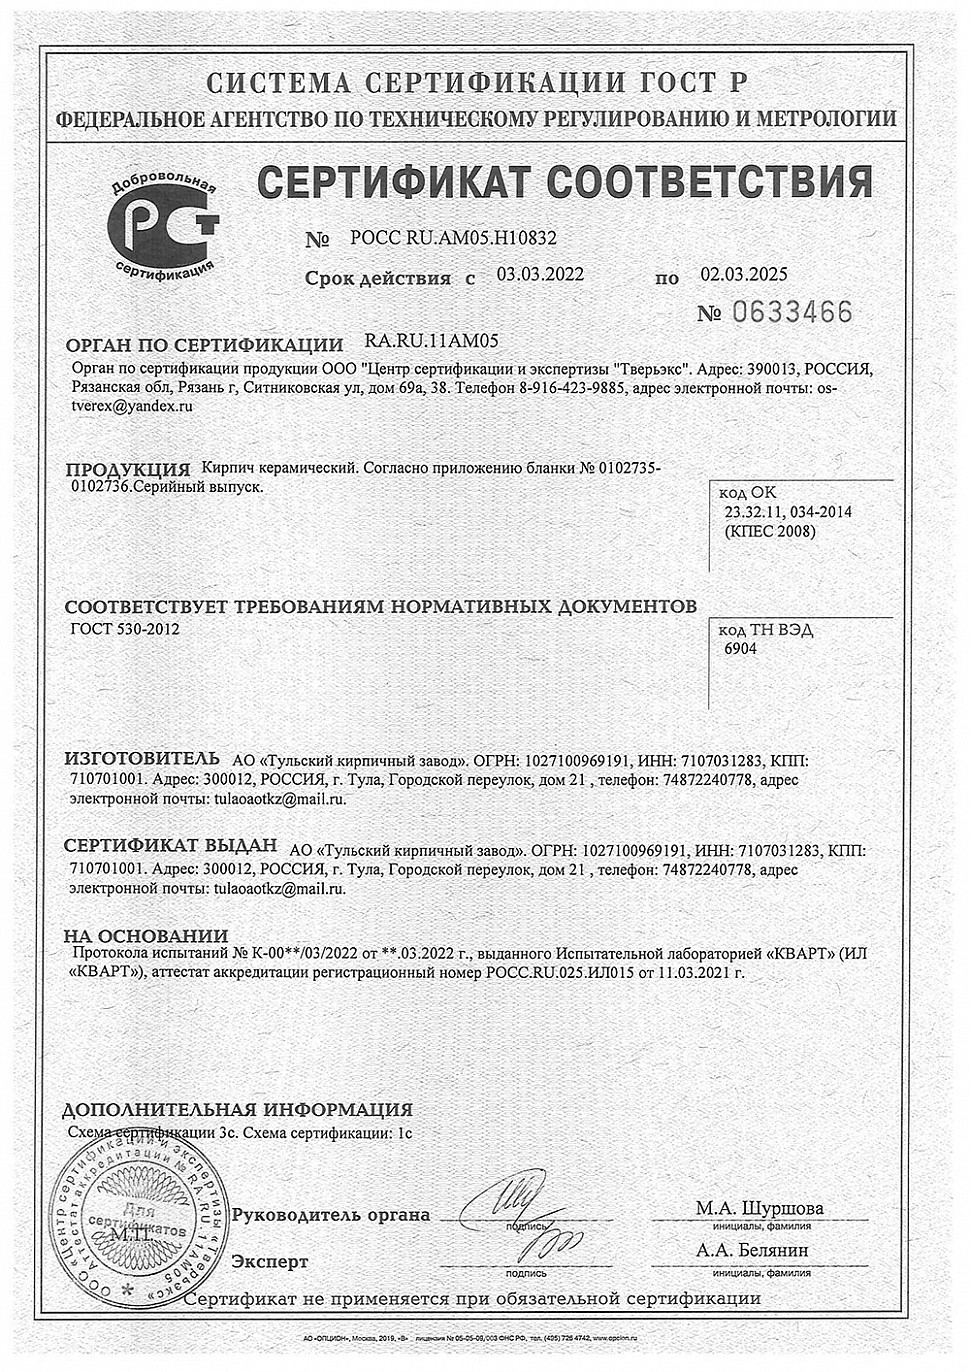 Сертификат соответствия на кирпич полнотелый, производства ТКЗ